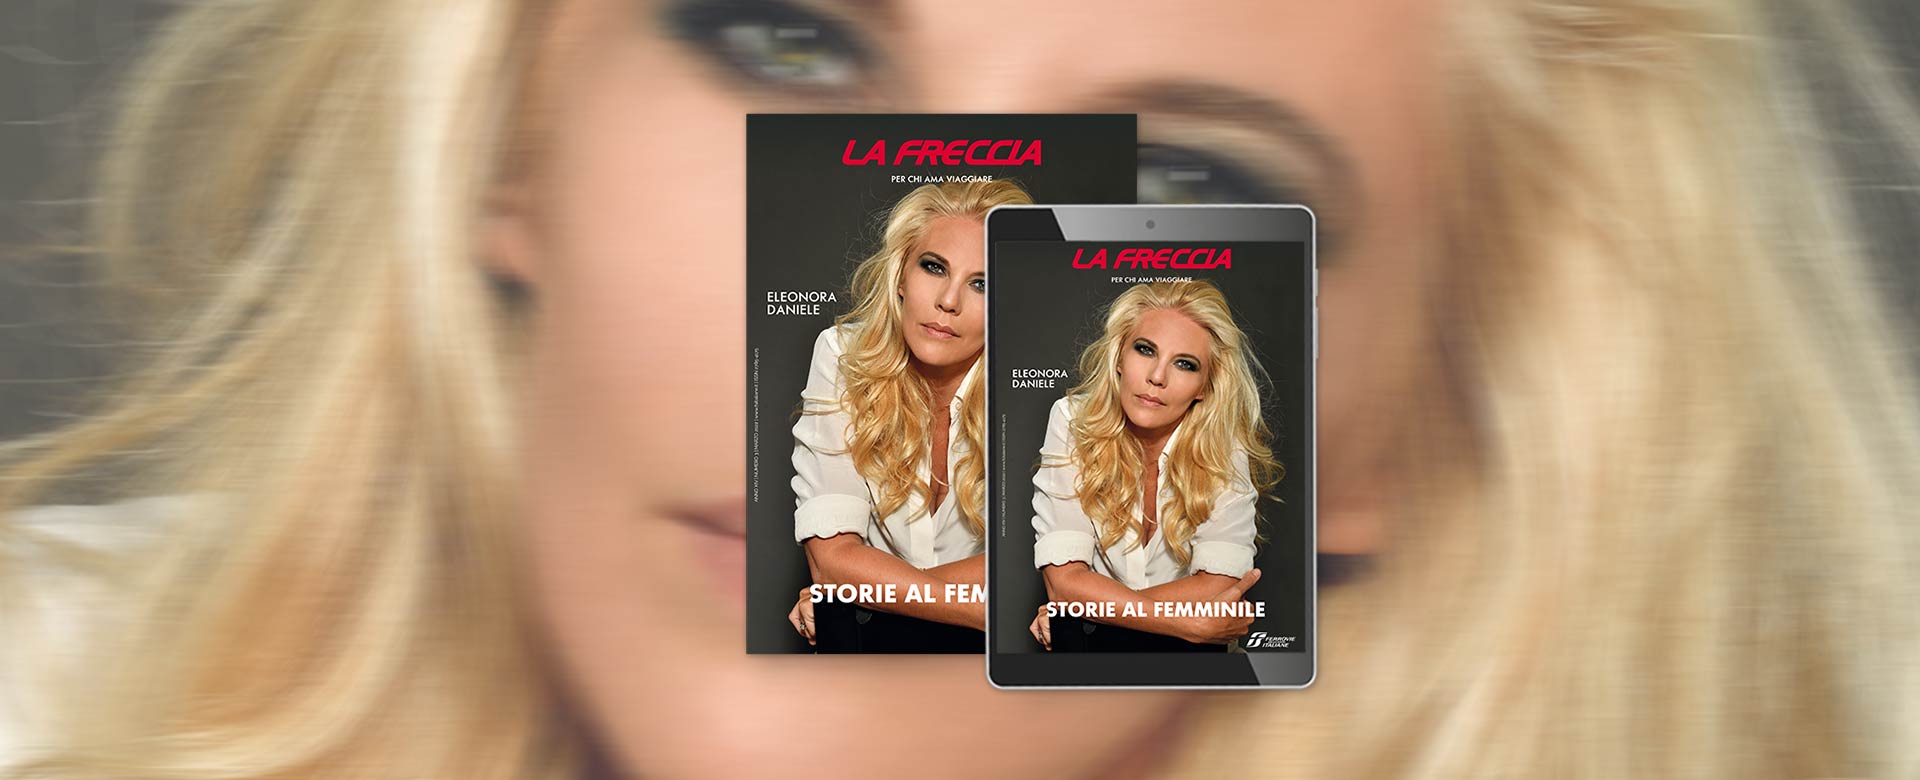 Cover de La Freccia di marzo 2022 con Eleonora Daniele